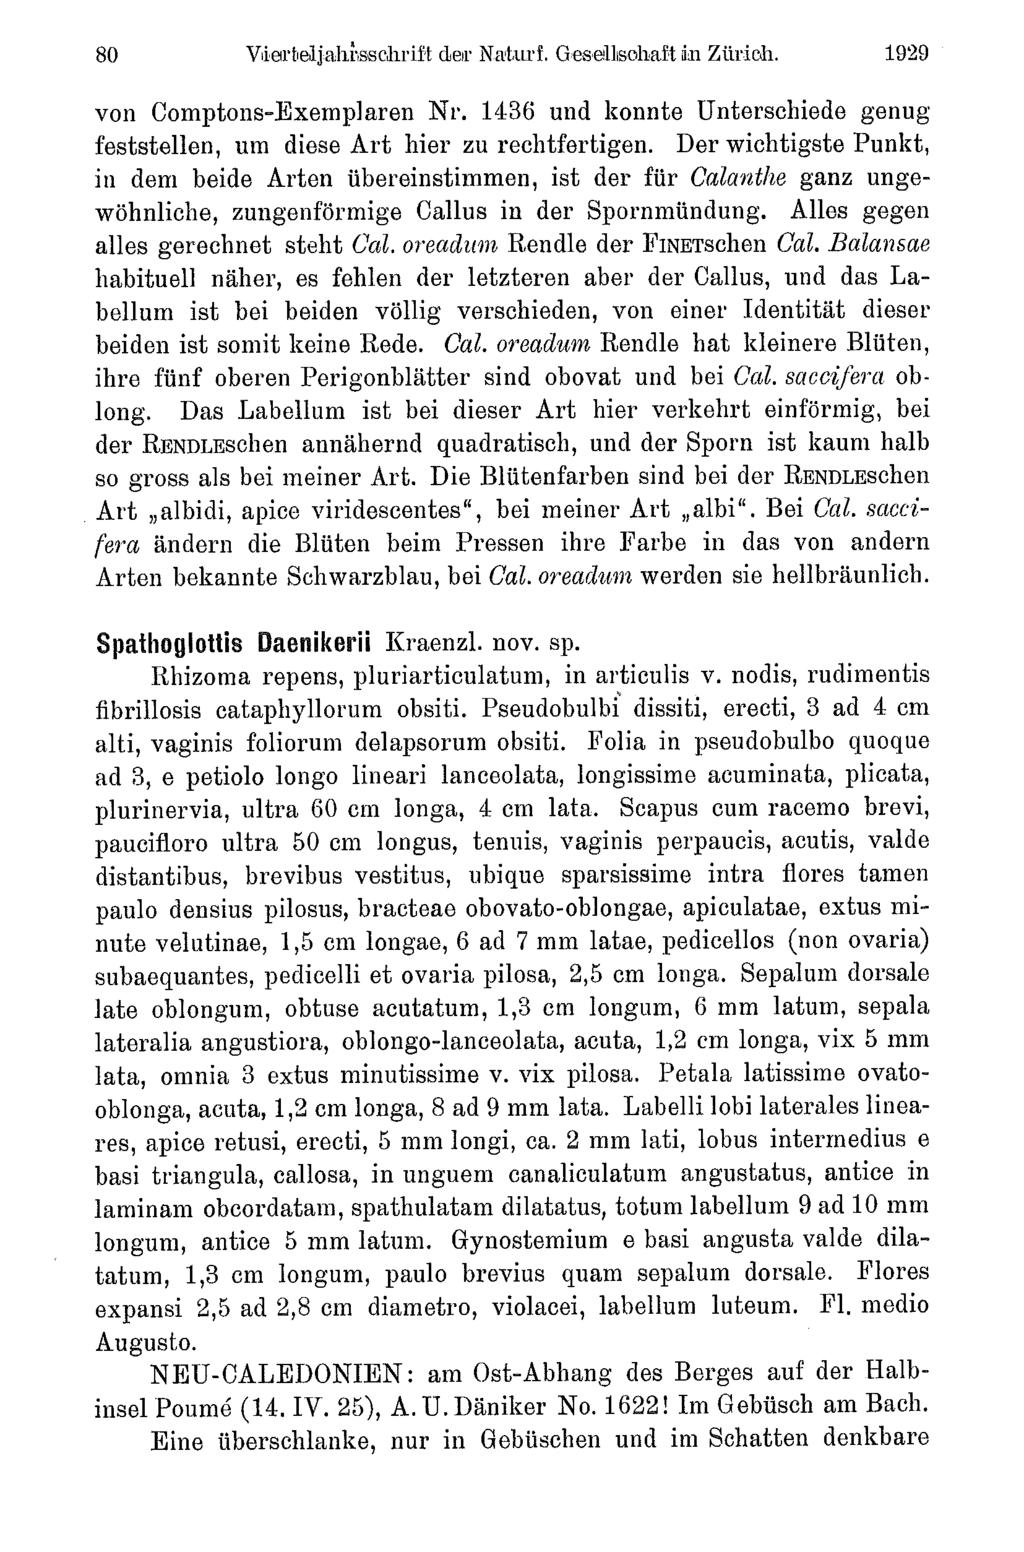 80 Viertelja1i sschrift der Naturf. Gesellisohaftin Zürich. 1929 von Comptons-Exemplaren Nr. 1436 und konnte Unterschiede genug feststellen, um diese Art hier zu rechtfertigen.